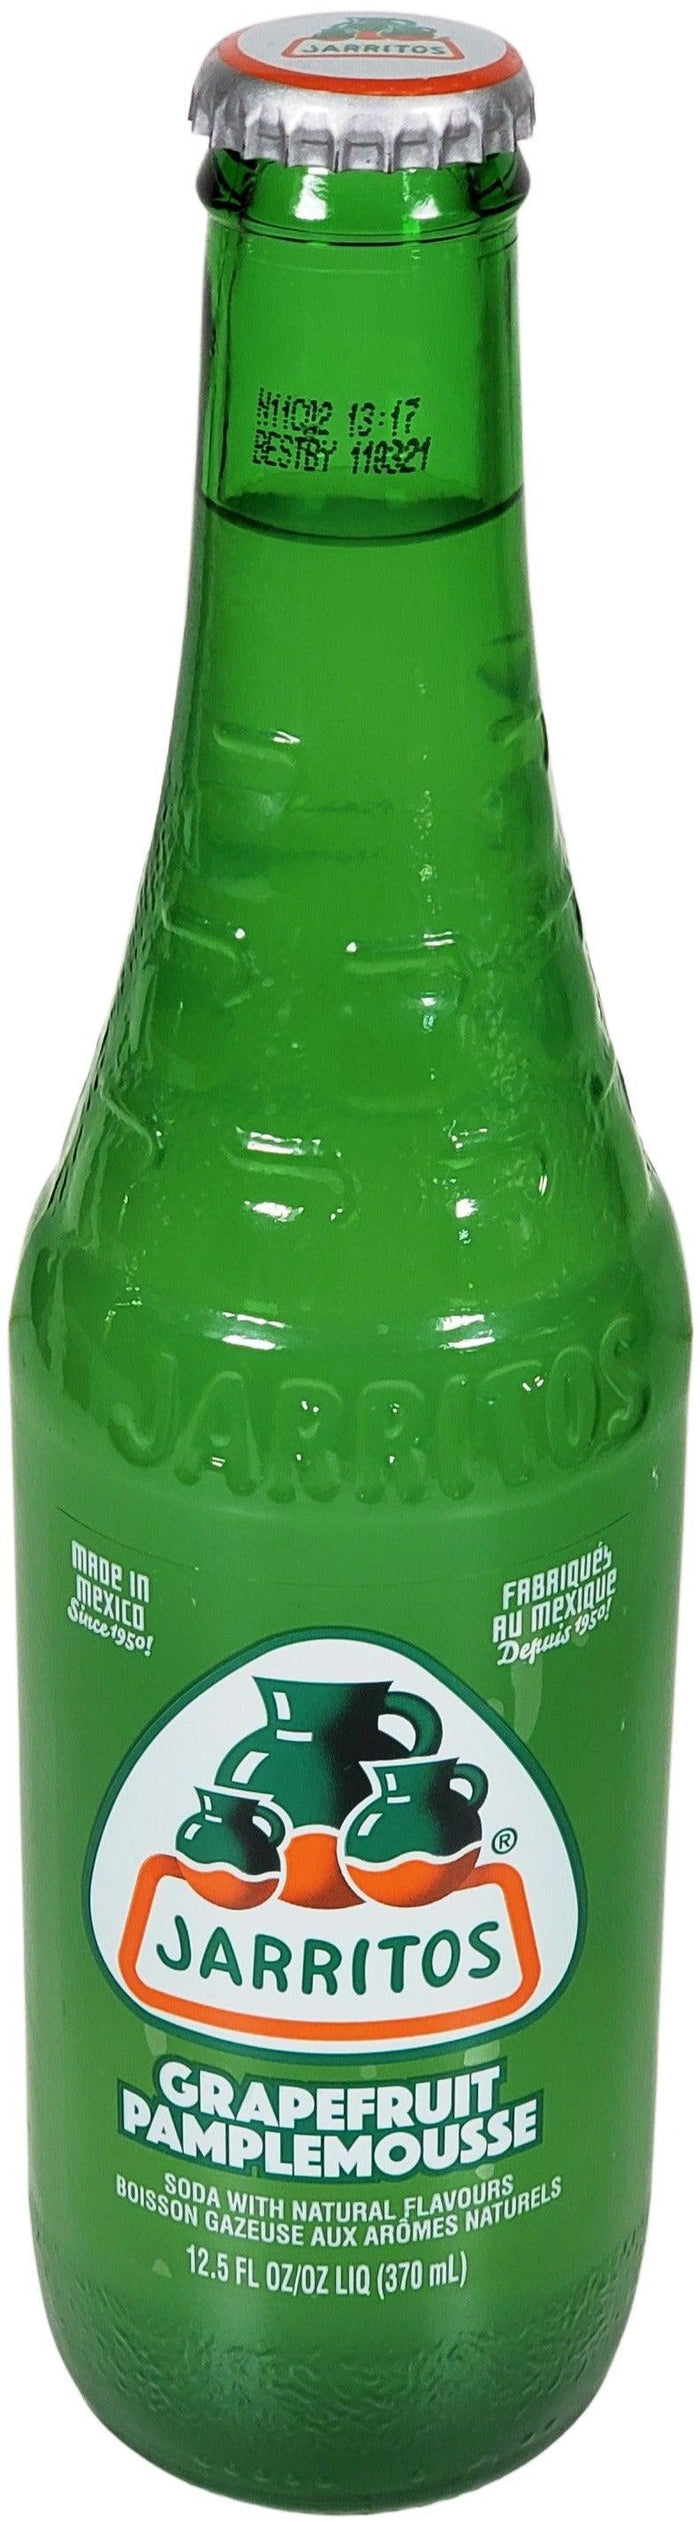 Jarritos - Grapefruit - Bottles